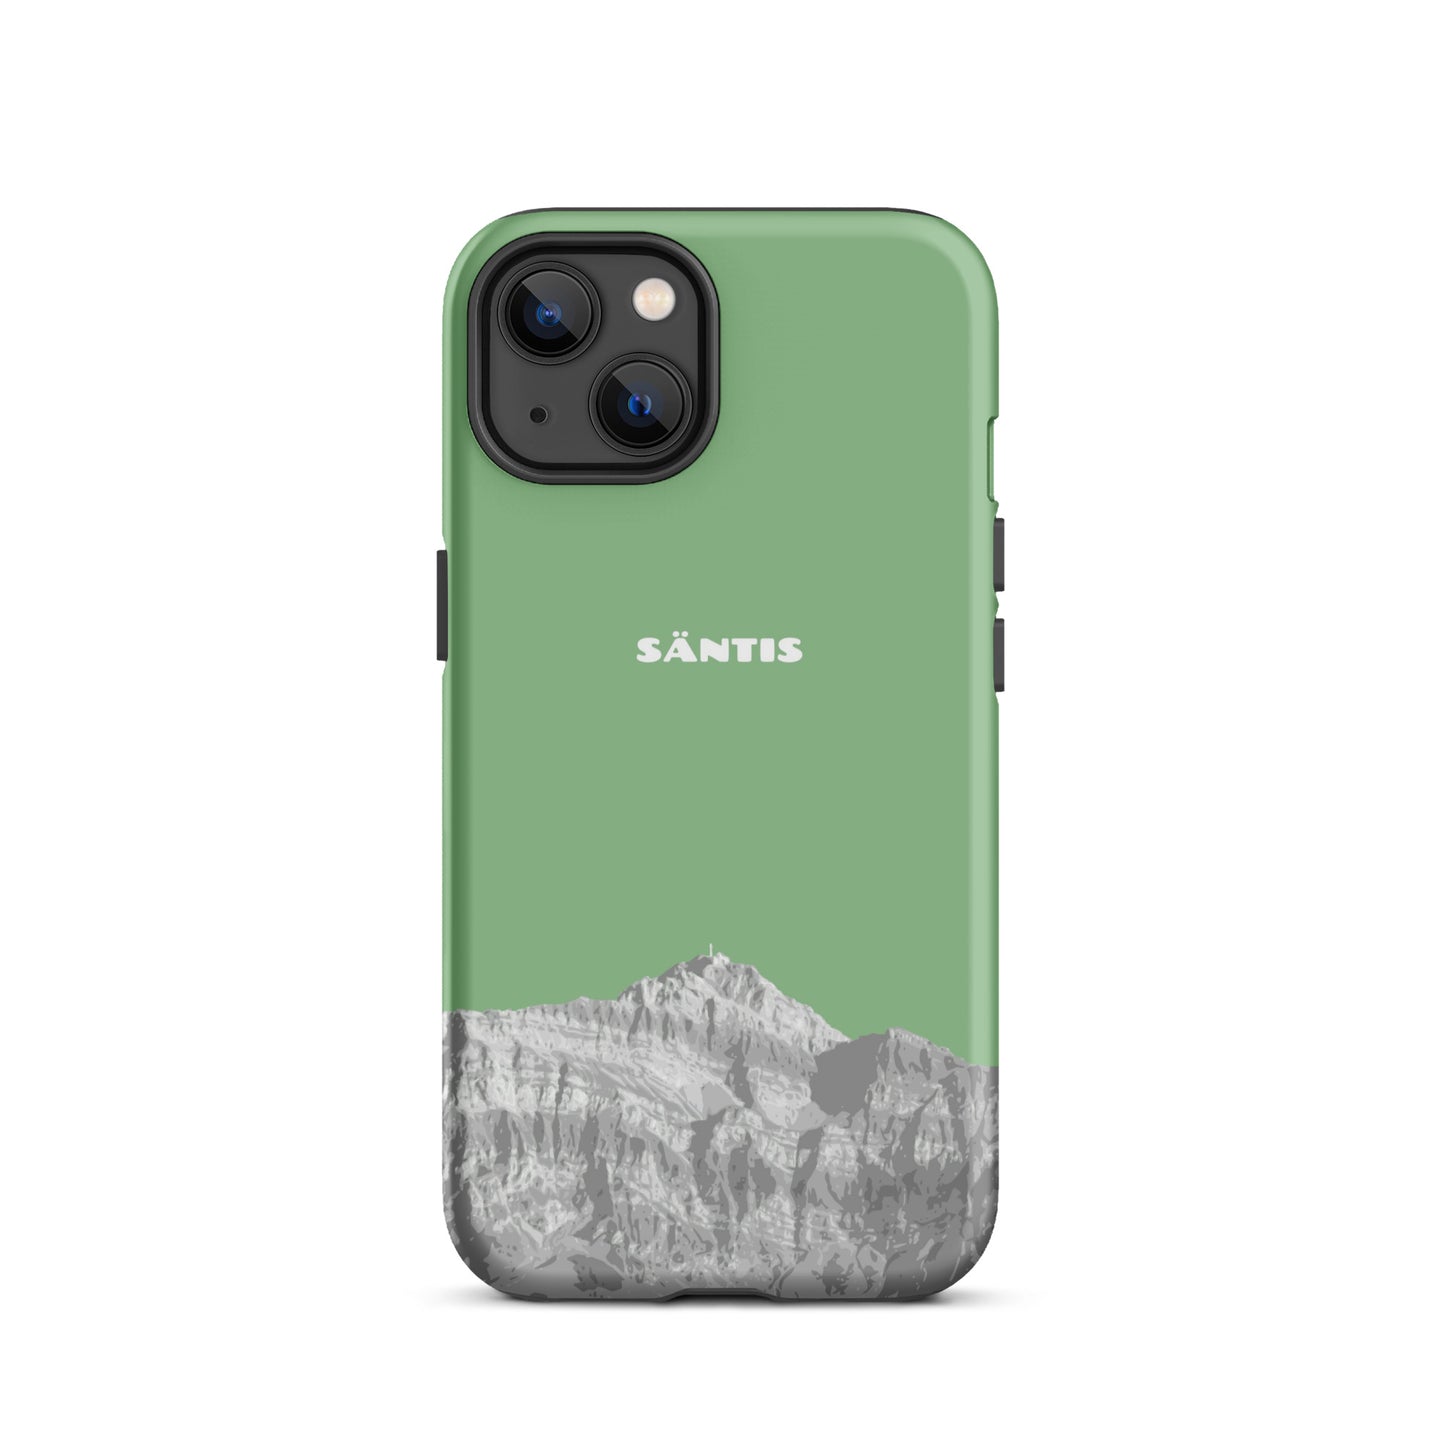 Hülle für das iPhone 13 Mini von Apple in der Farbe Hellgrün, dass den Säntis im Alpstein zeigt.